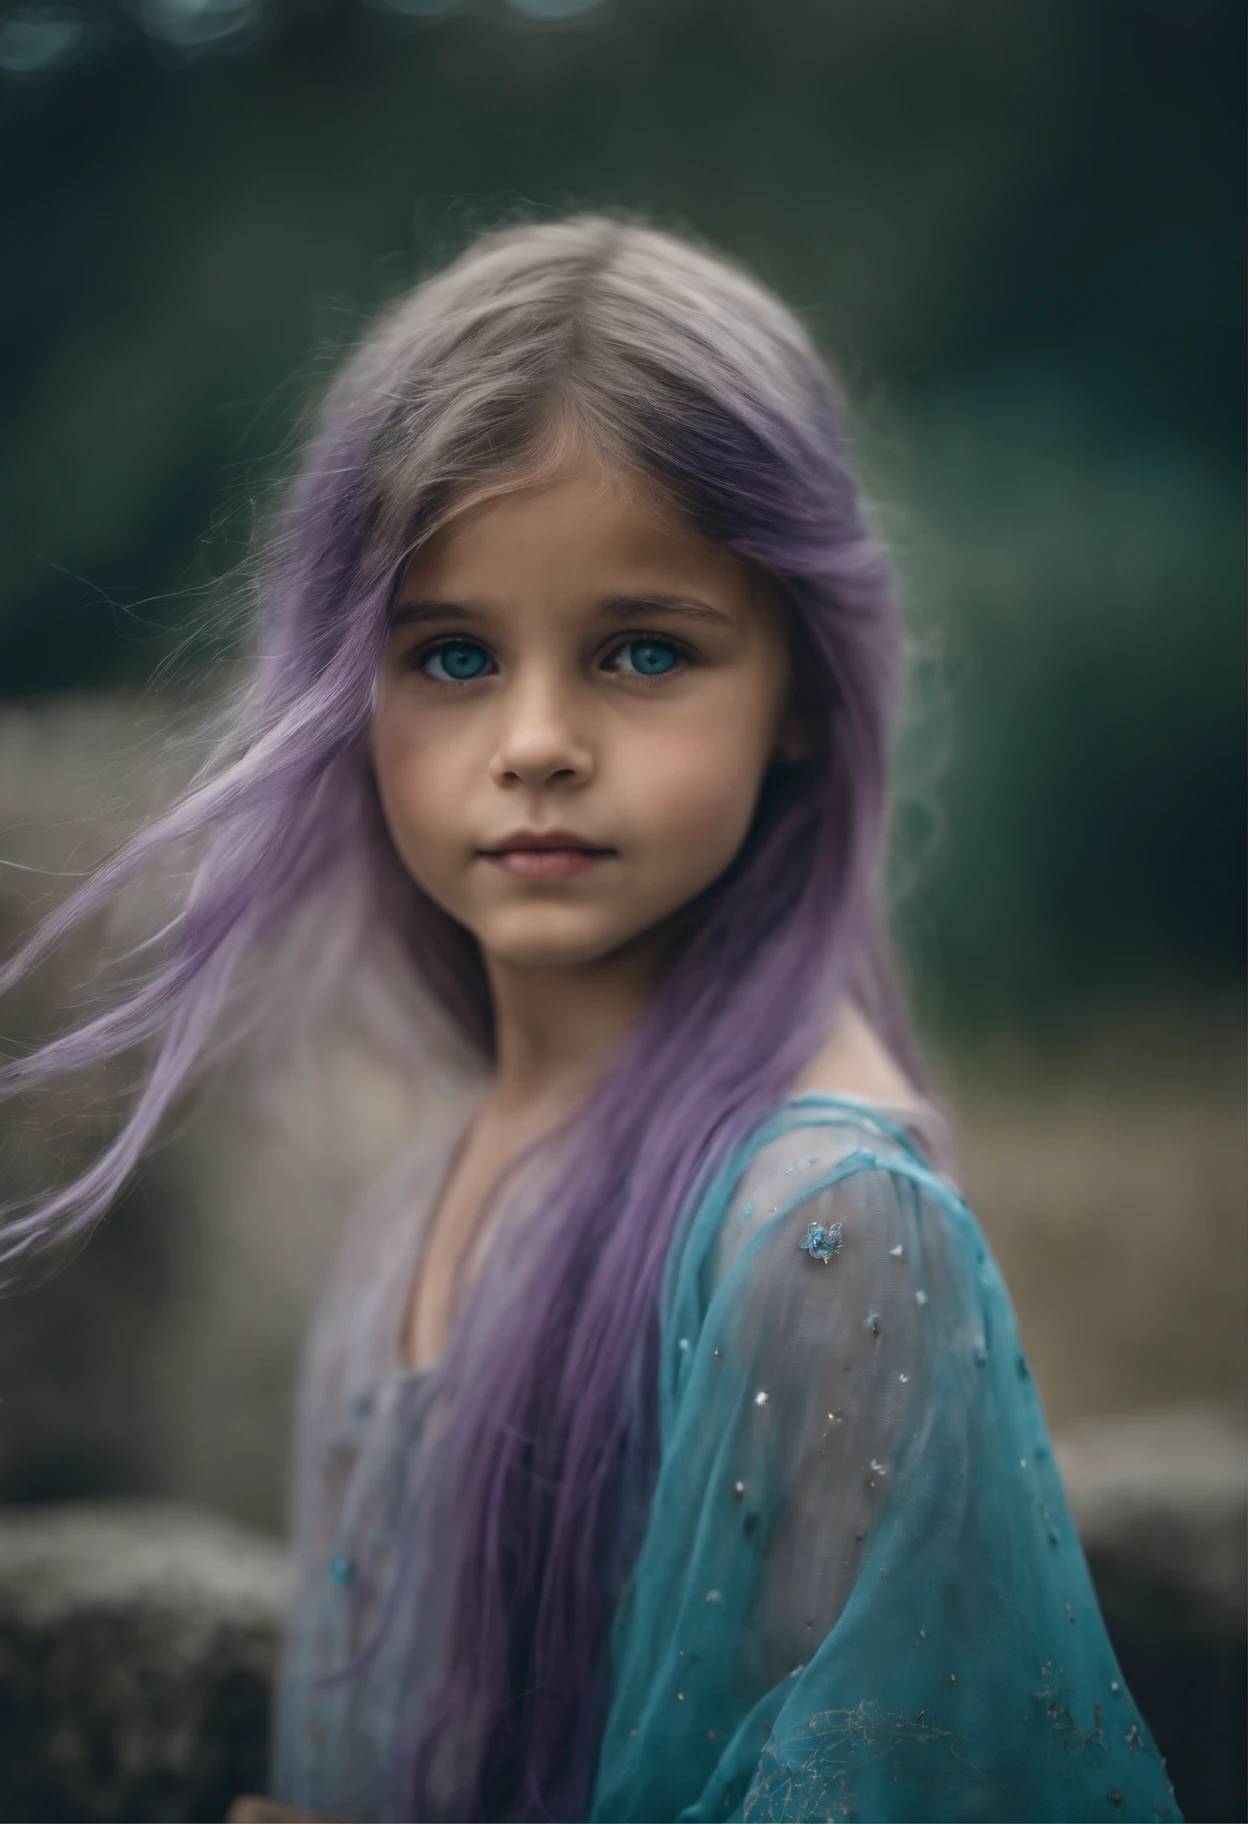 一个美丽的女孩, 約8歲. The girl has long light blue 頭髮, straight 頭髮, ((凌亂的)) 頭髮, 瀏海)) 和藍色的大眼睛. 女孩穿著綠松石色的上衣和紫色的潮褲. 希臘神廟遺址背景. 繁星点点的夜空.